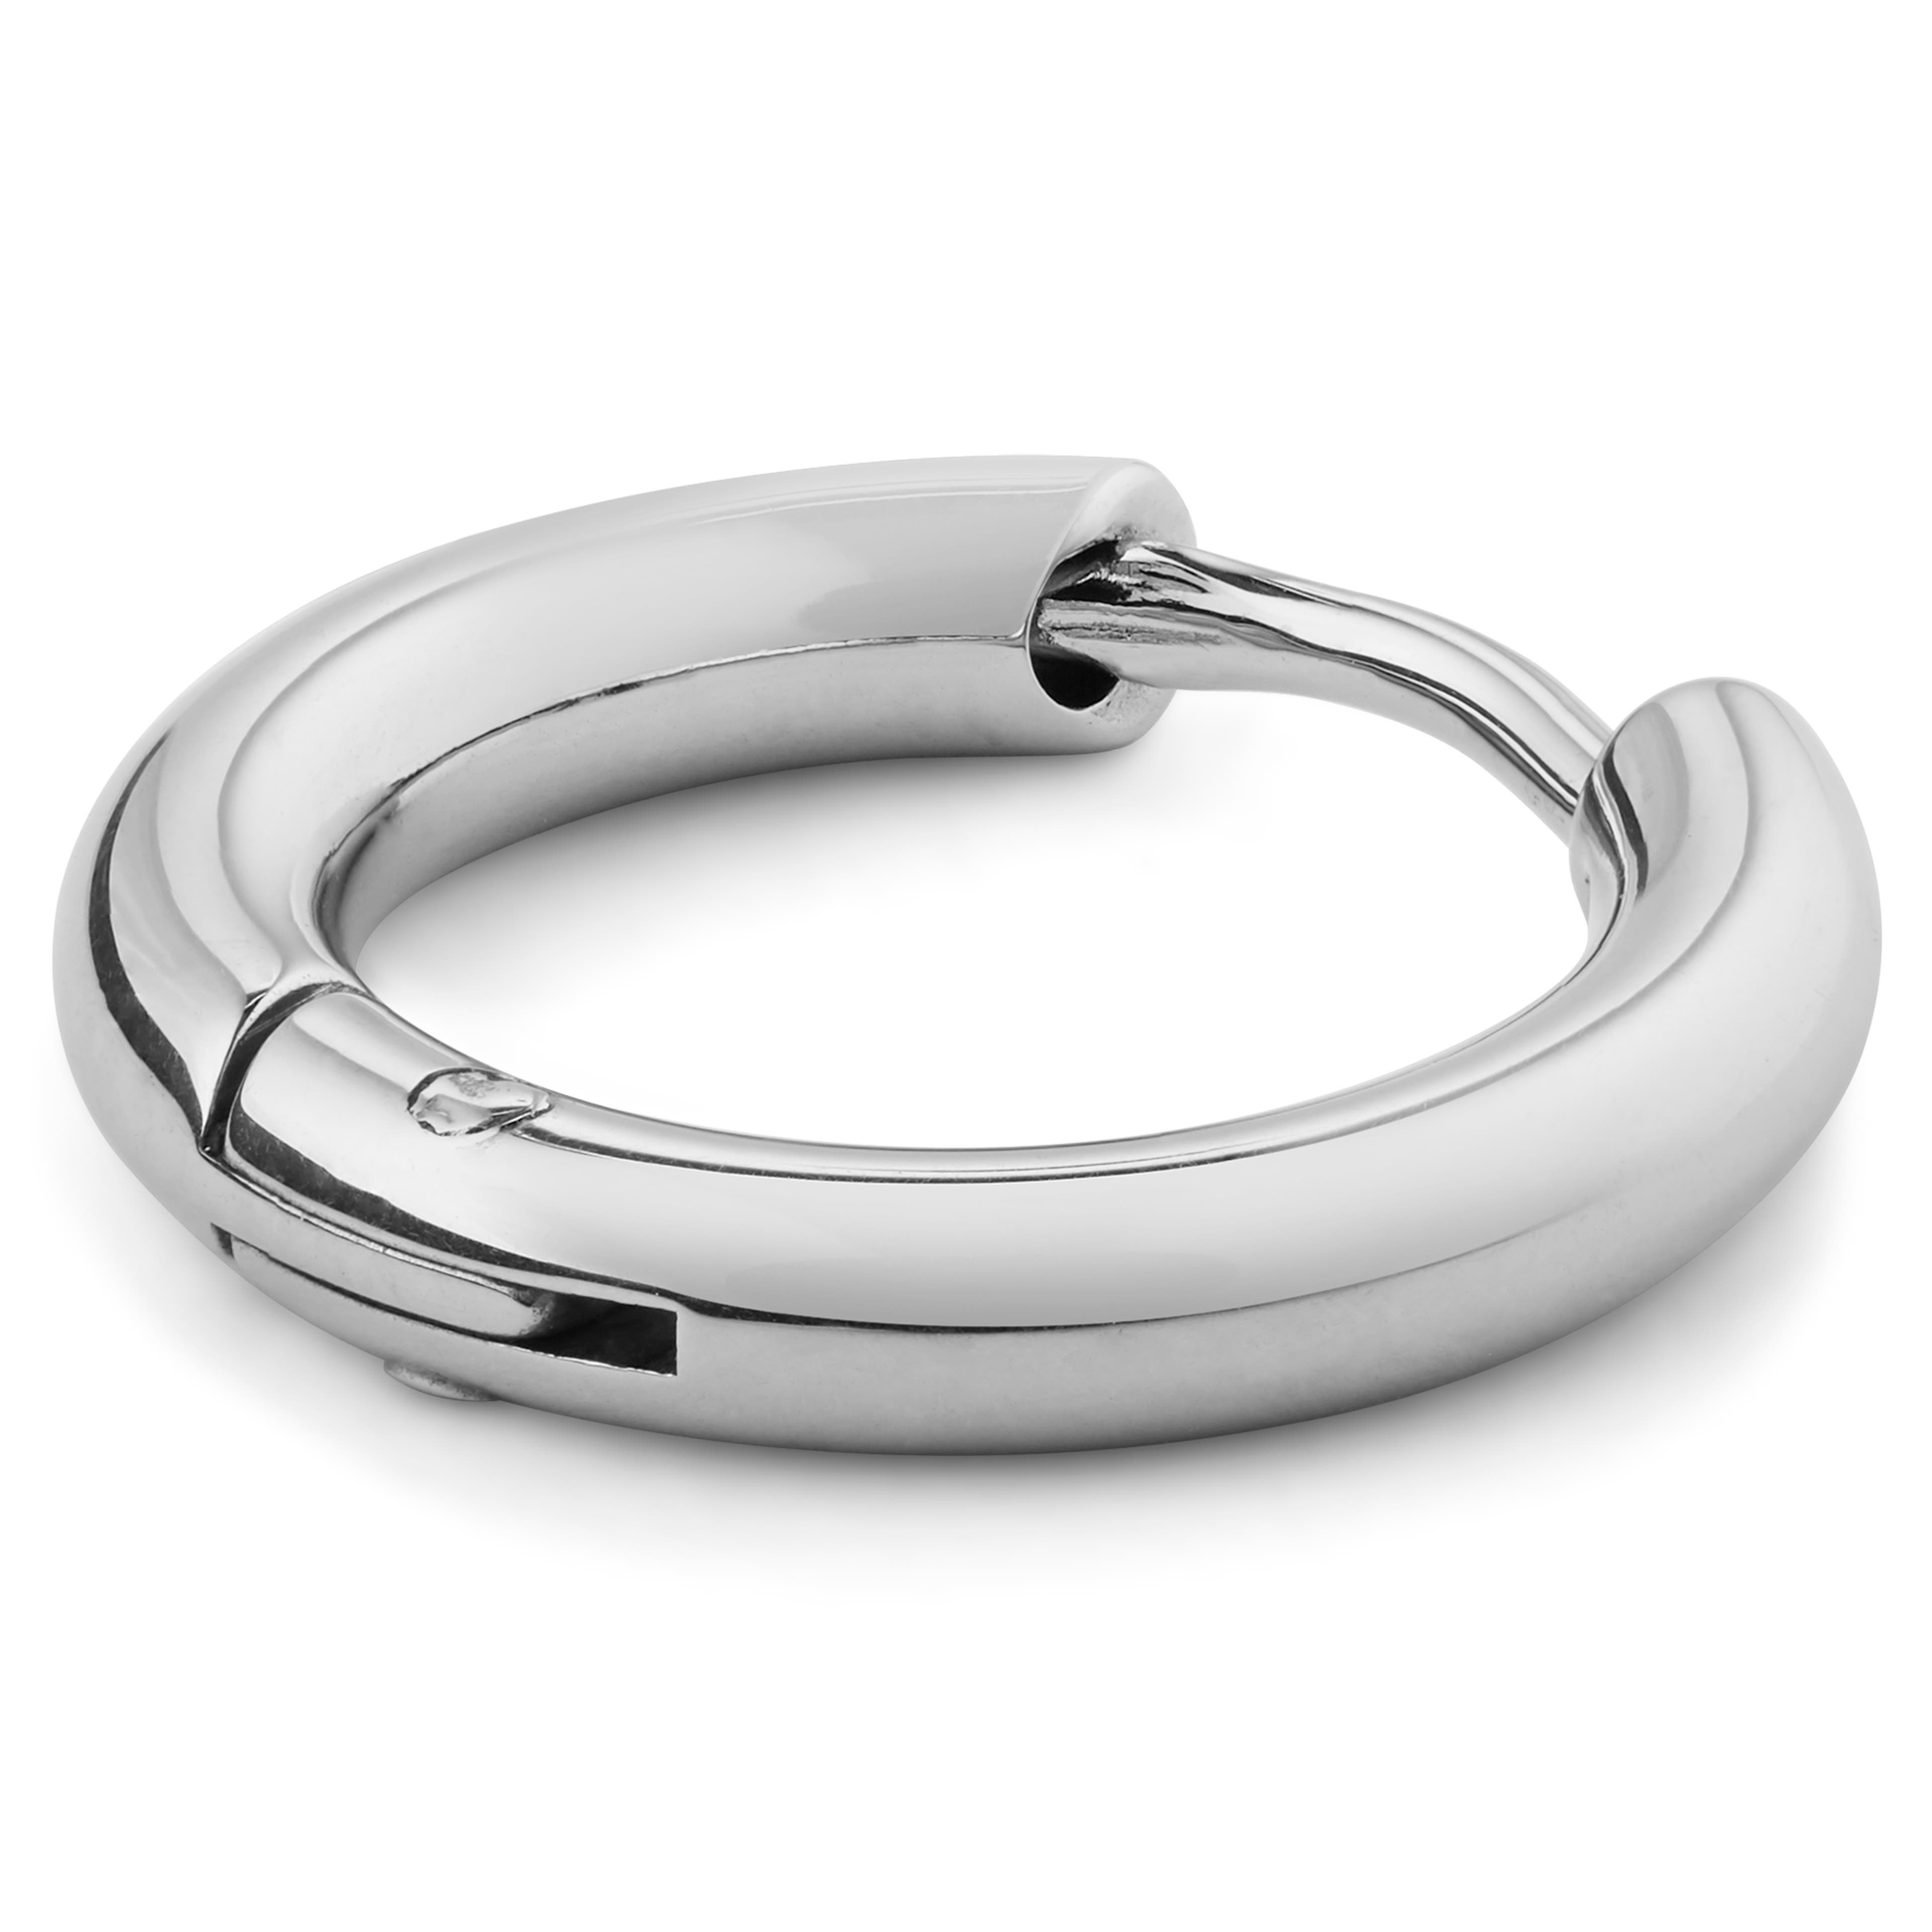 Silver-Tone Stainless Steel Hoop Earring